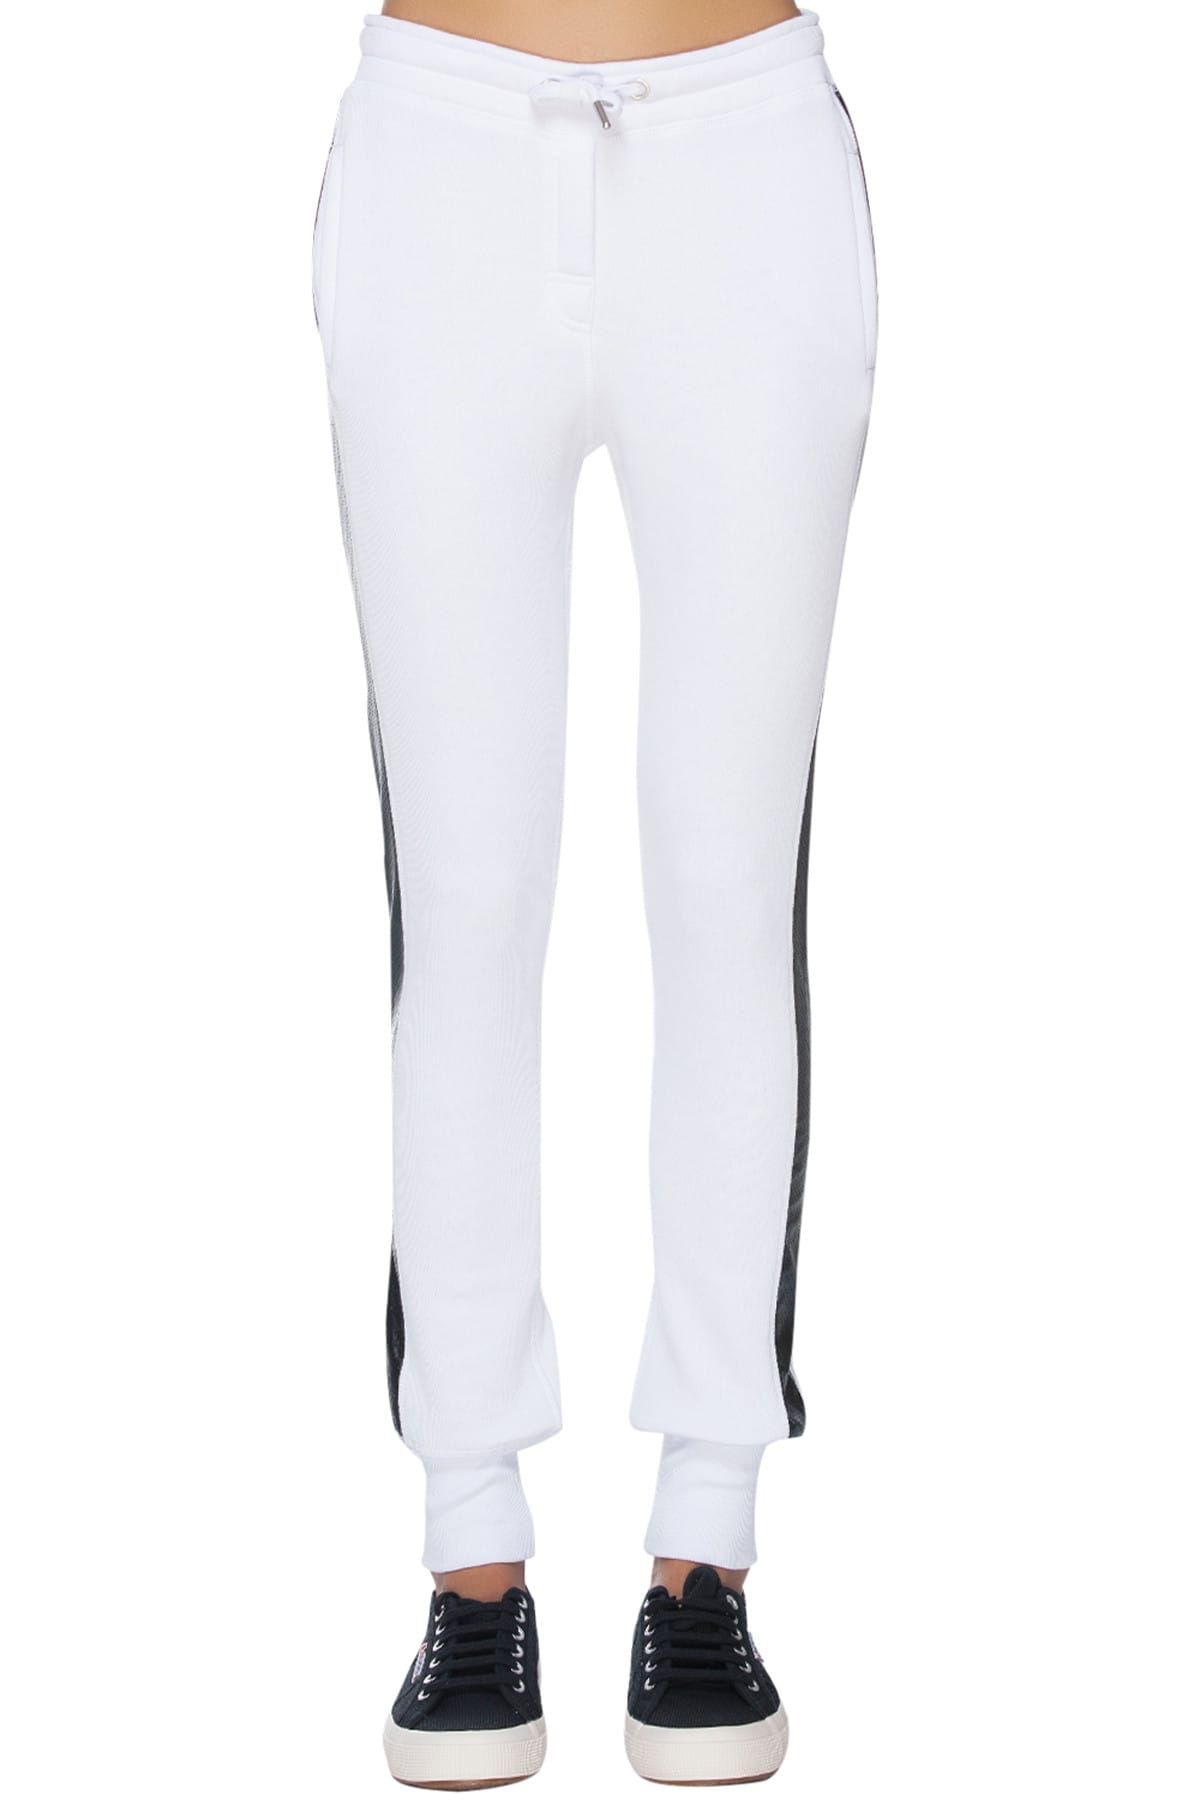 Zoe Karssen Kadın Beyaz Yandan Siyah Şeritli Slim Fit Pantolon - ZKA01102001